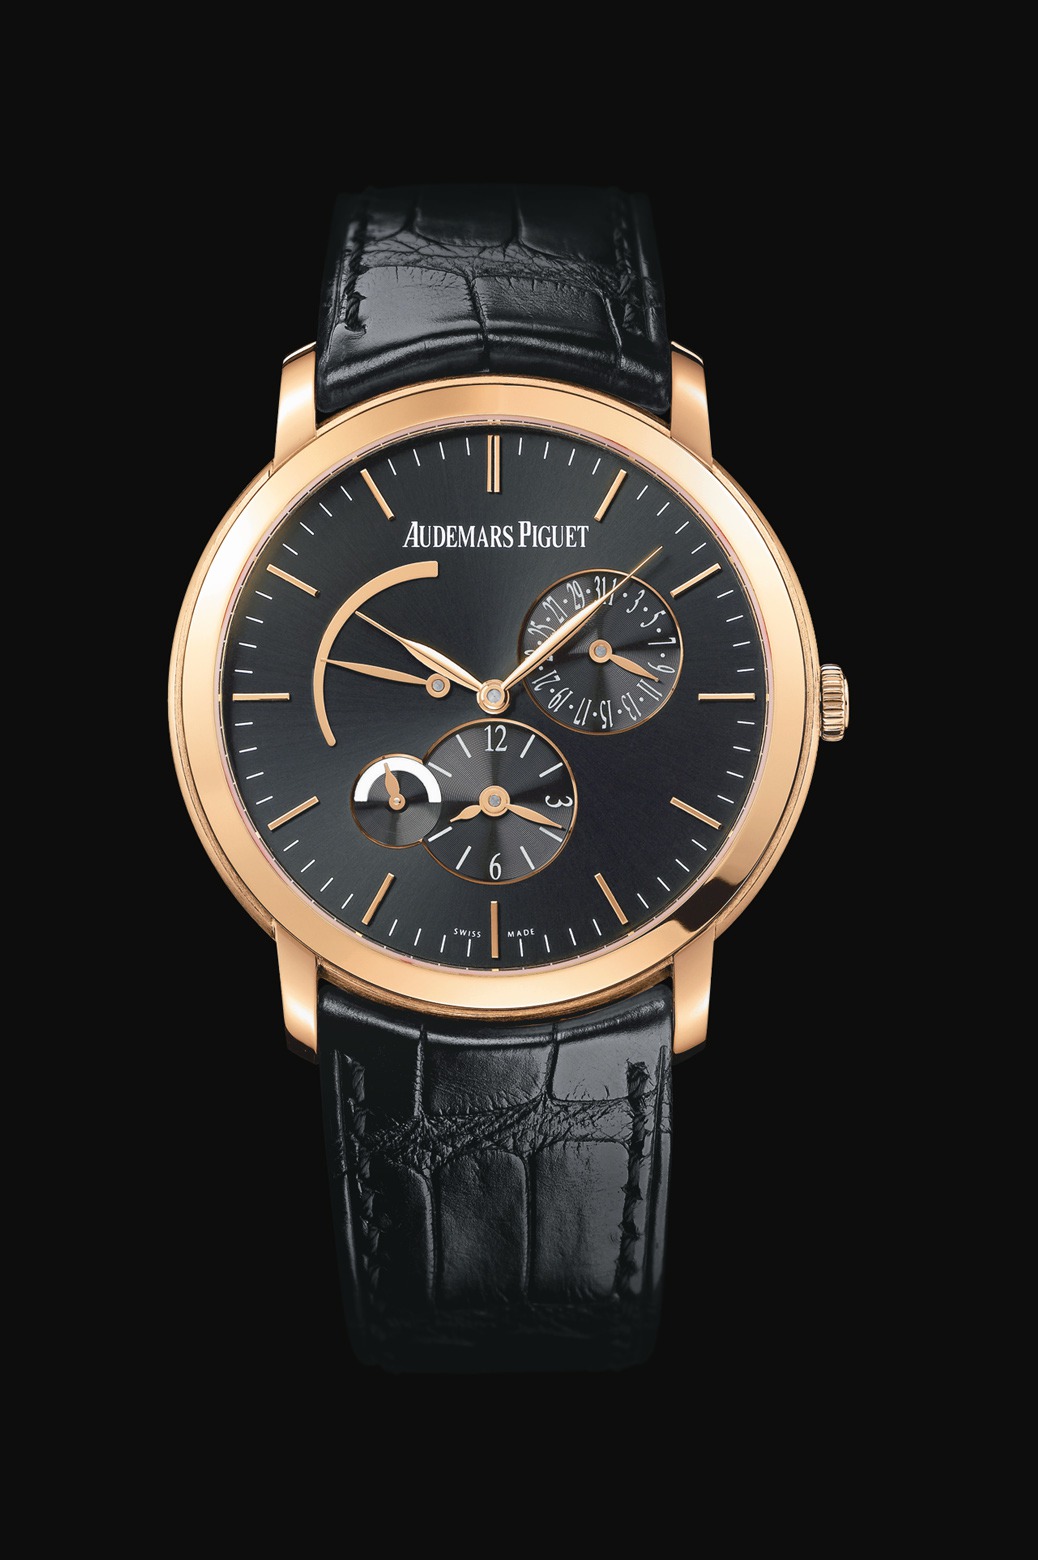 Audemars Piguet Jules Audemars Dual Time Pink Gold watch REF: 26380OR.OO.D002CR.01